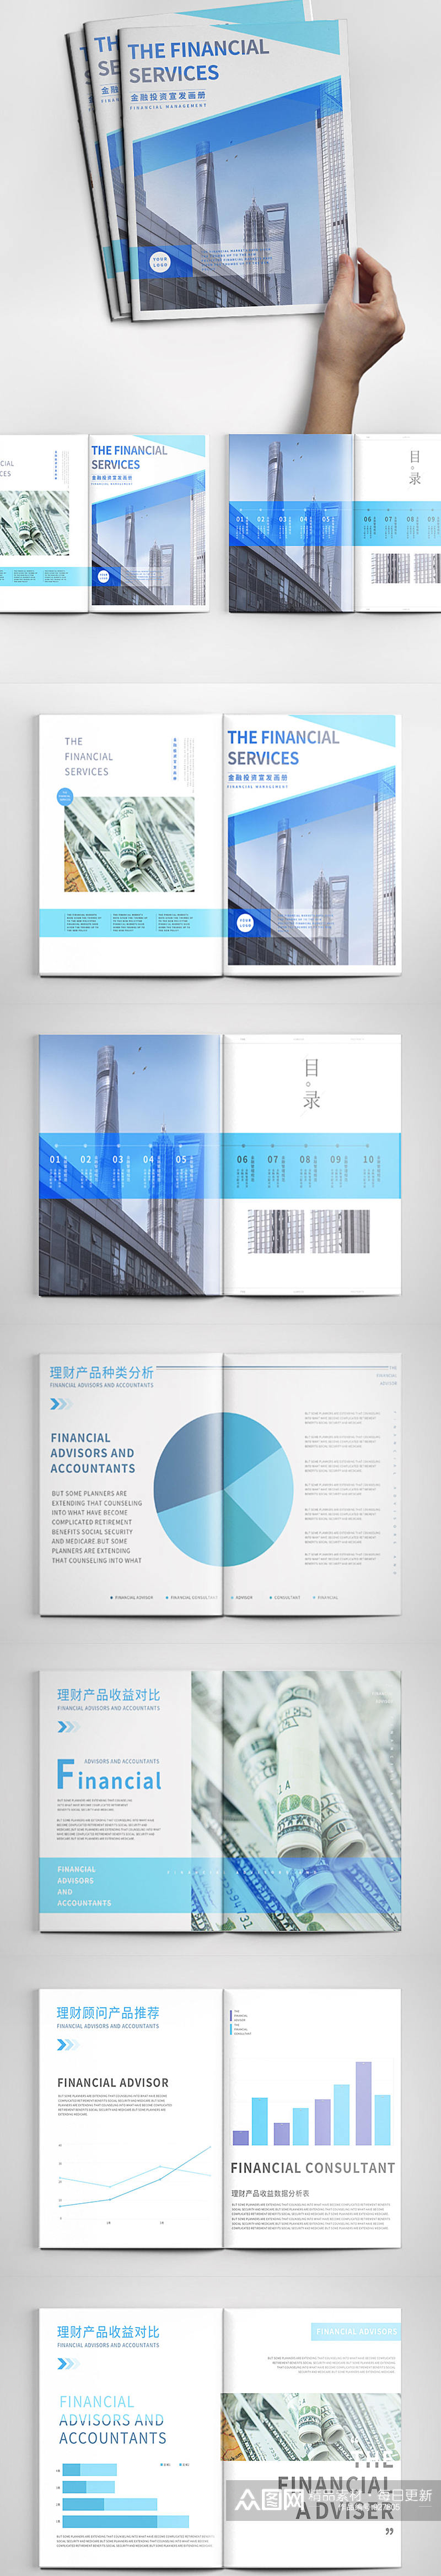 理财画册设计金融投资方向画册素材